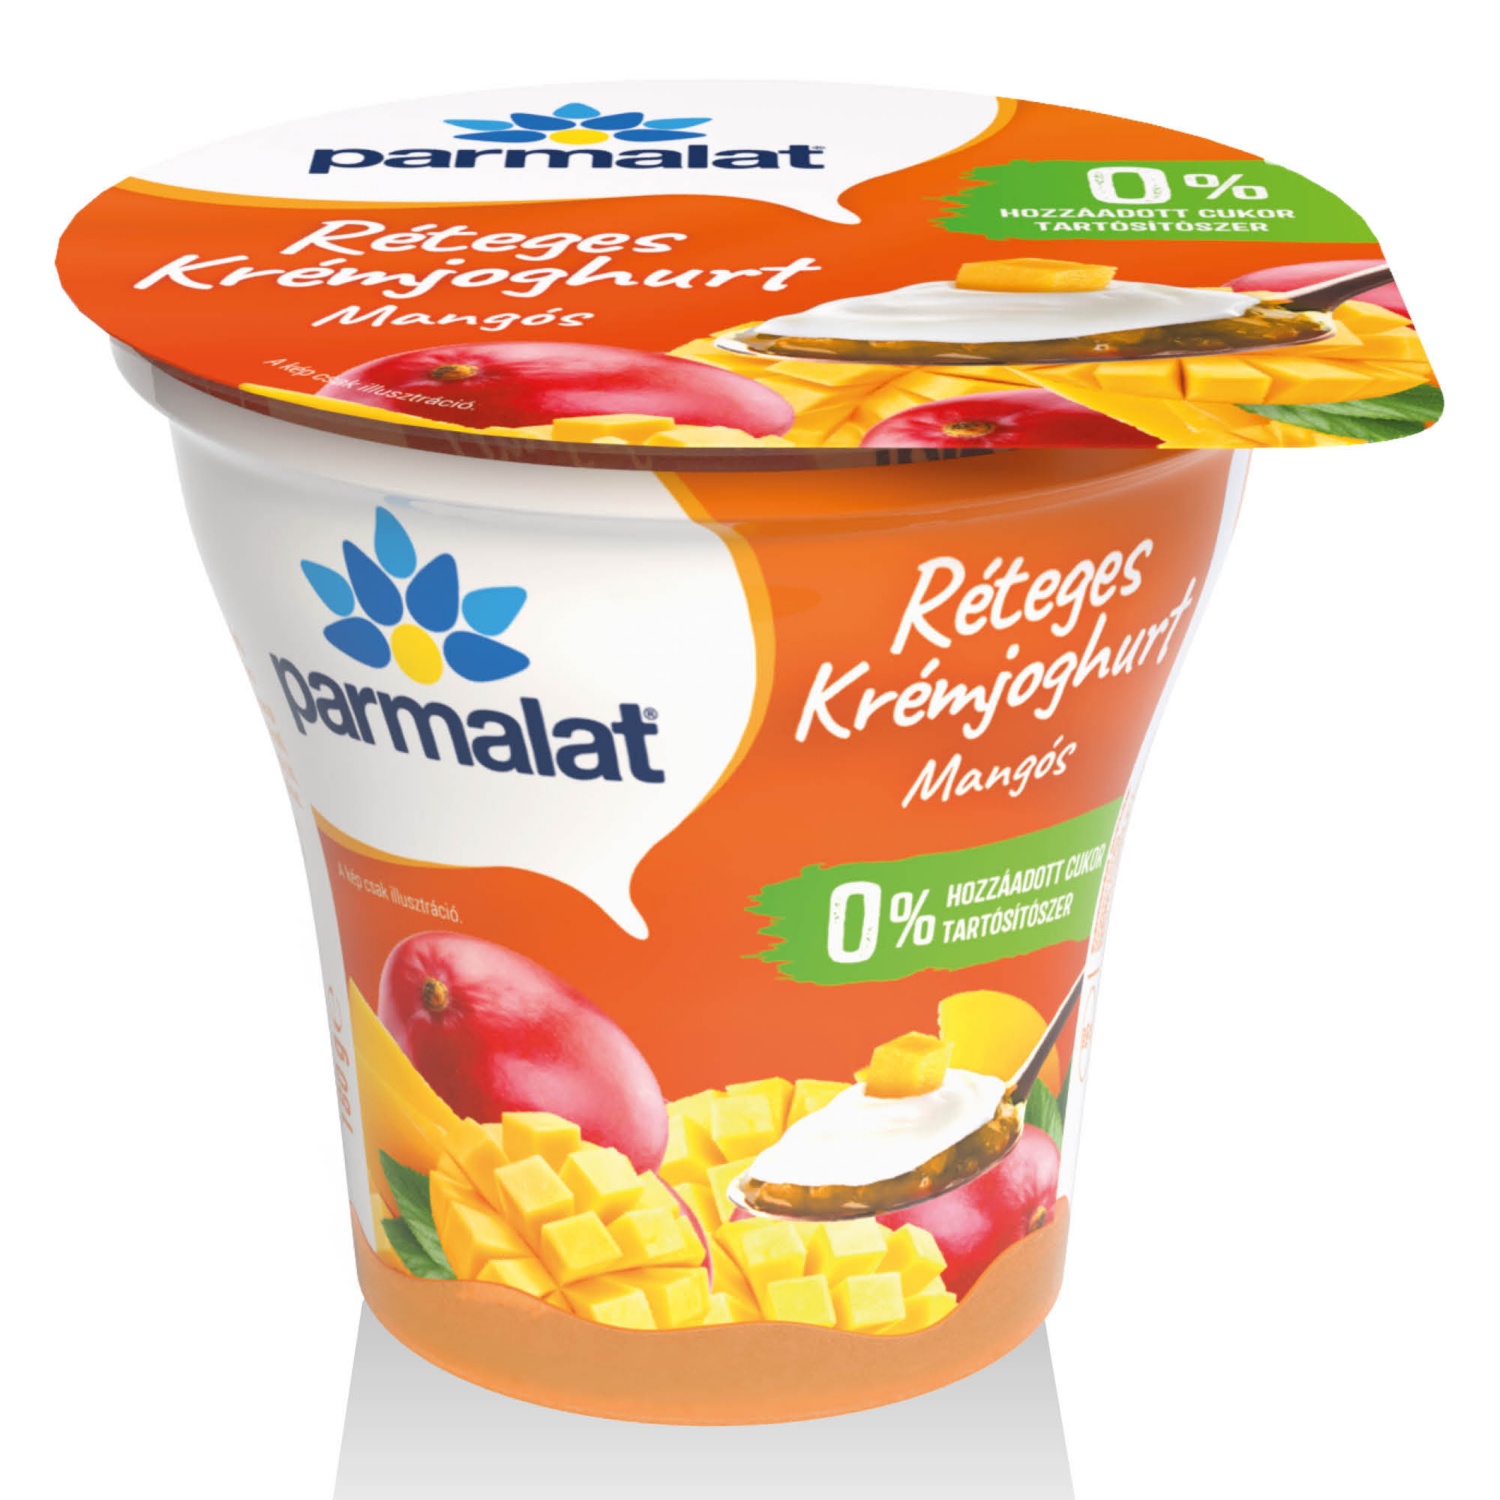 PARMALAT Réteges krémjoghurt, 180 g, mangós